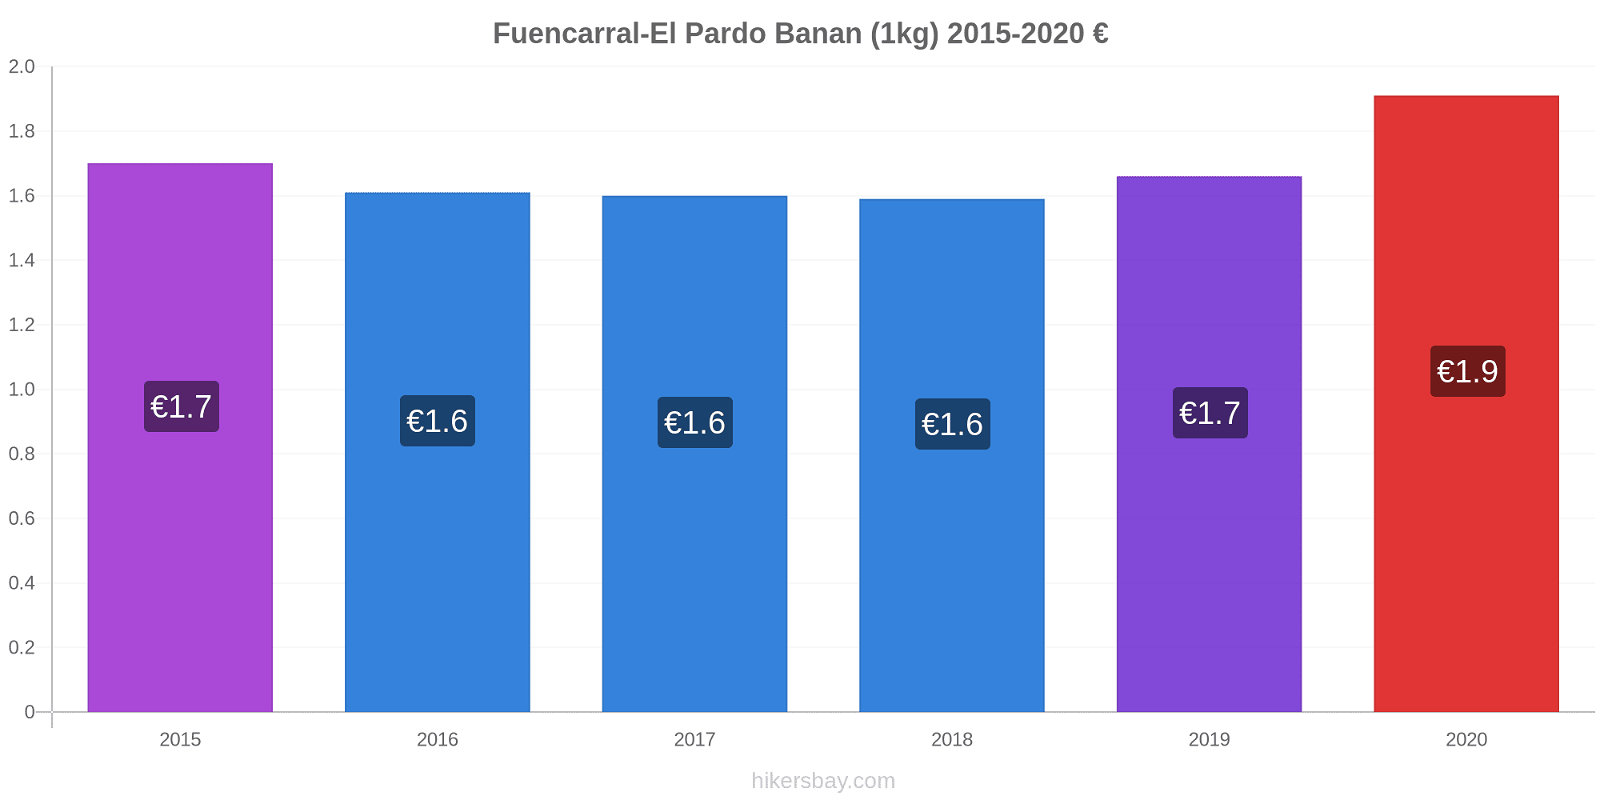 Fuencarral-El Pardo prisendringer Banan (1kg) hikersbay.com